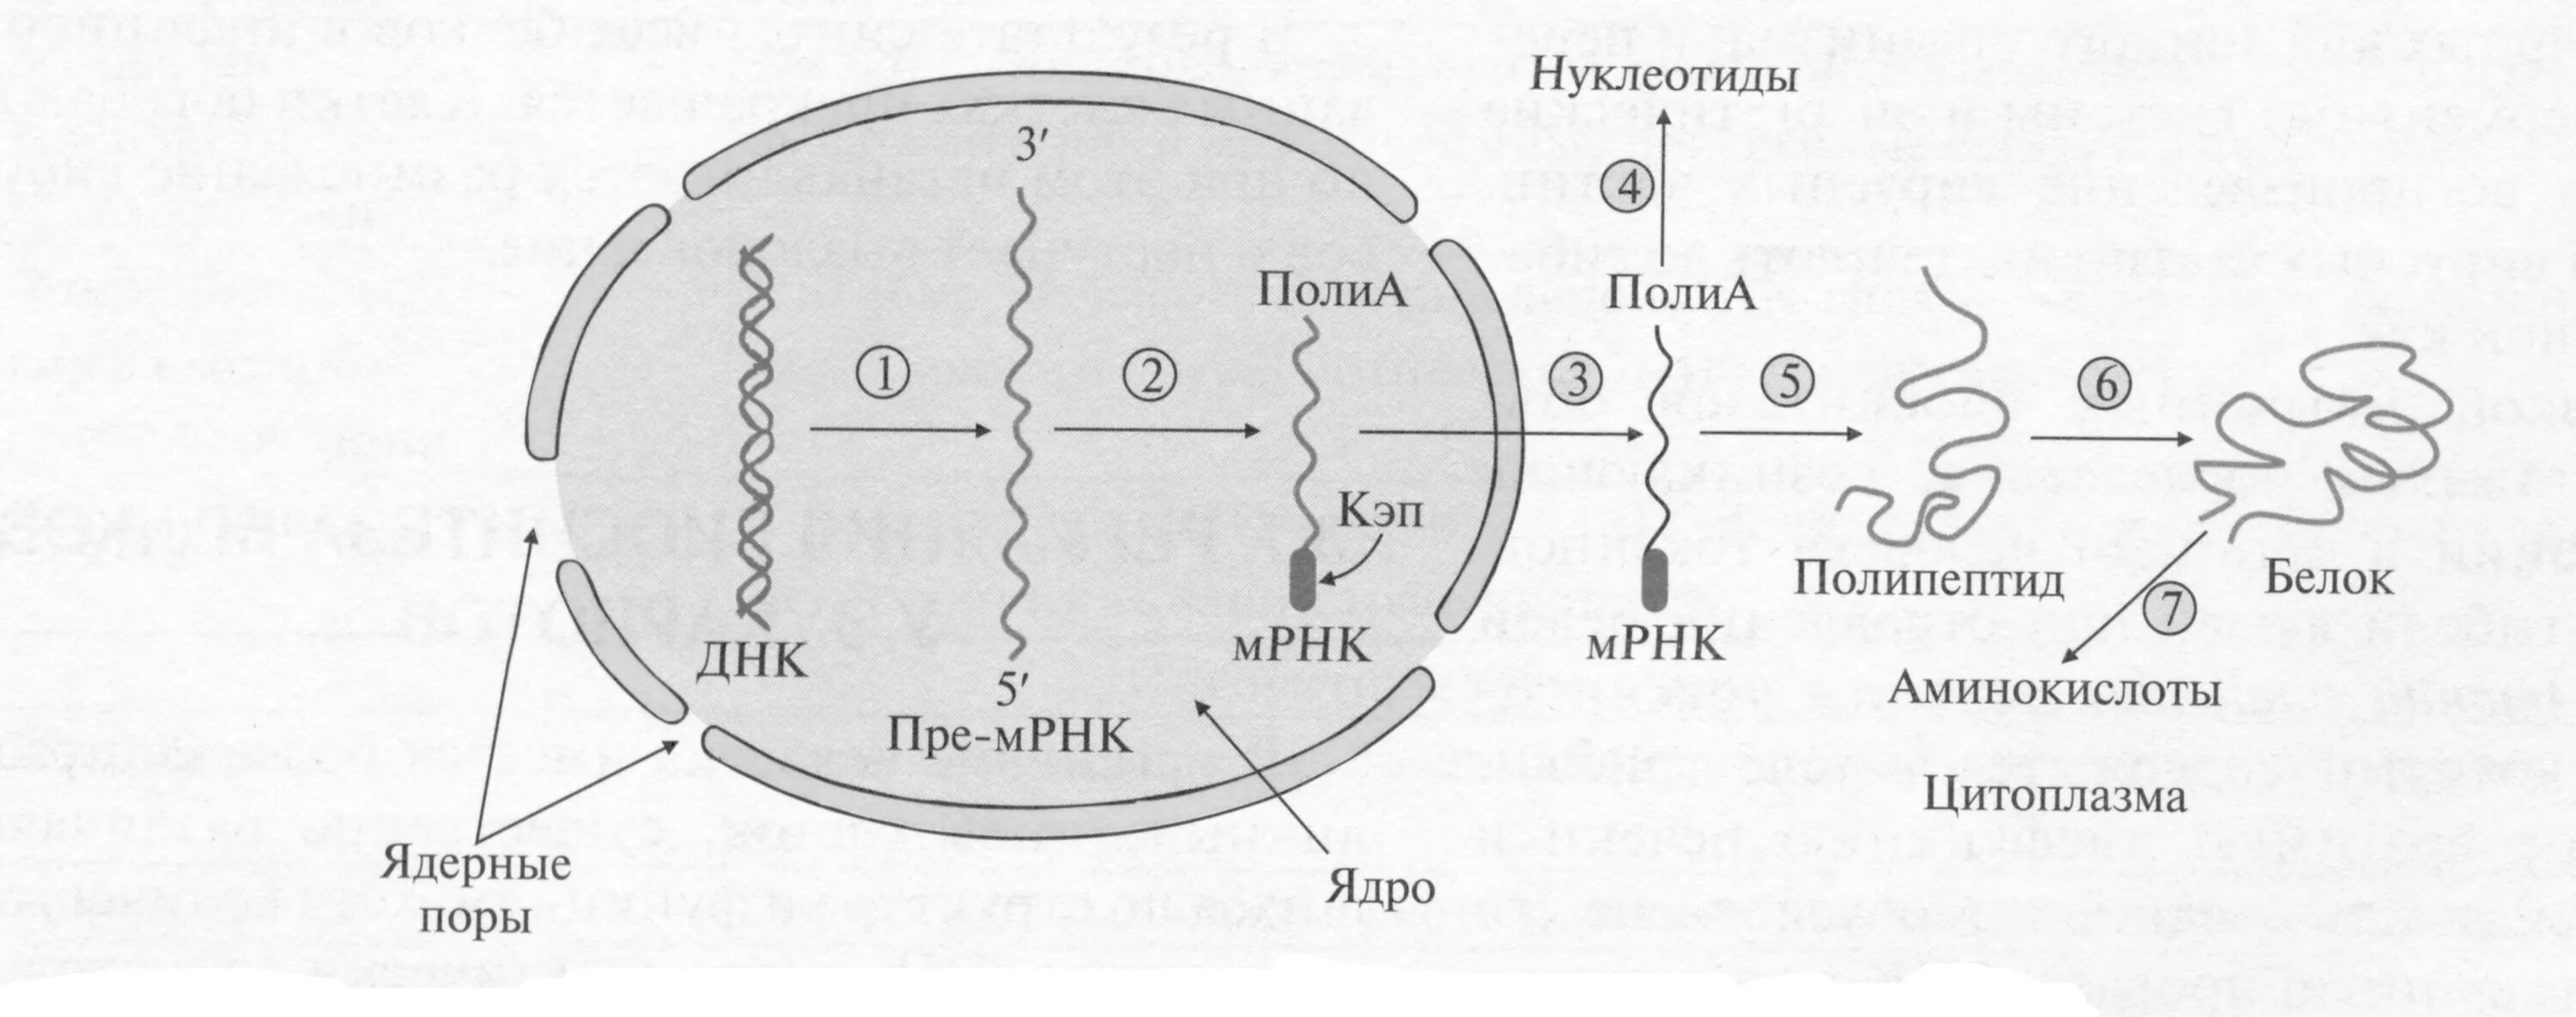 Биосинтез прокариот. Биосинтез белка эукариот. Схема синтеза белка эукариот. Биосинтез белка схема с МРНК. Синтез белка у эукариот.